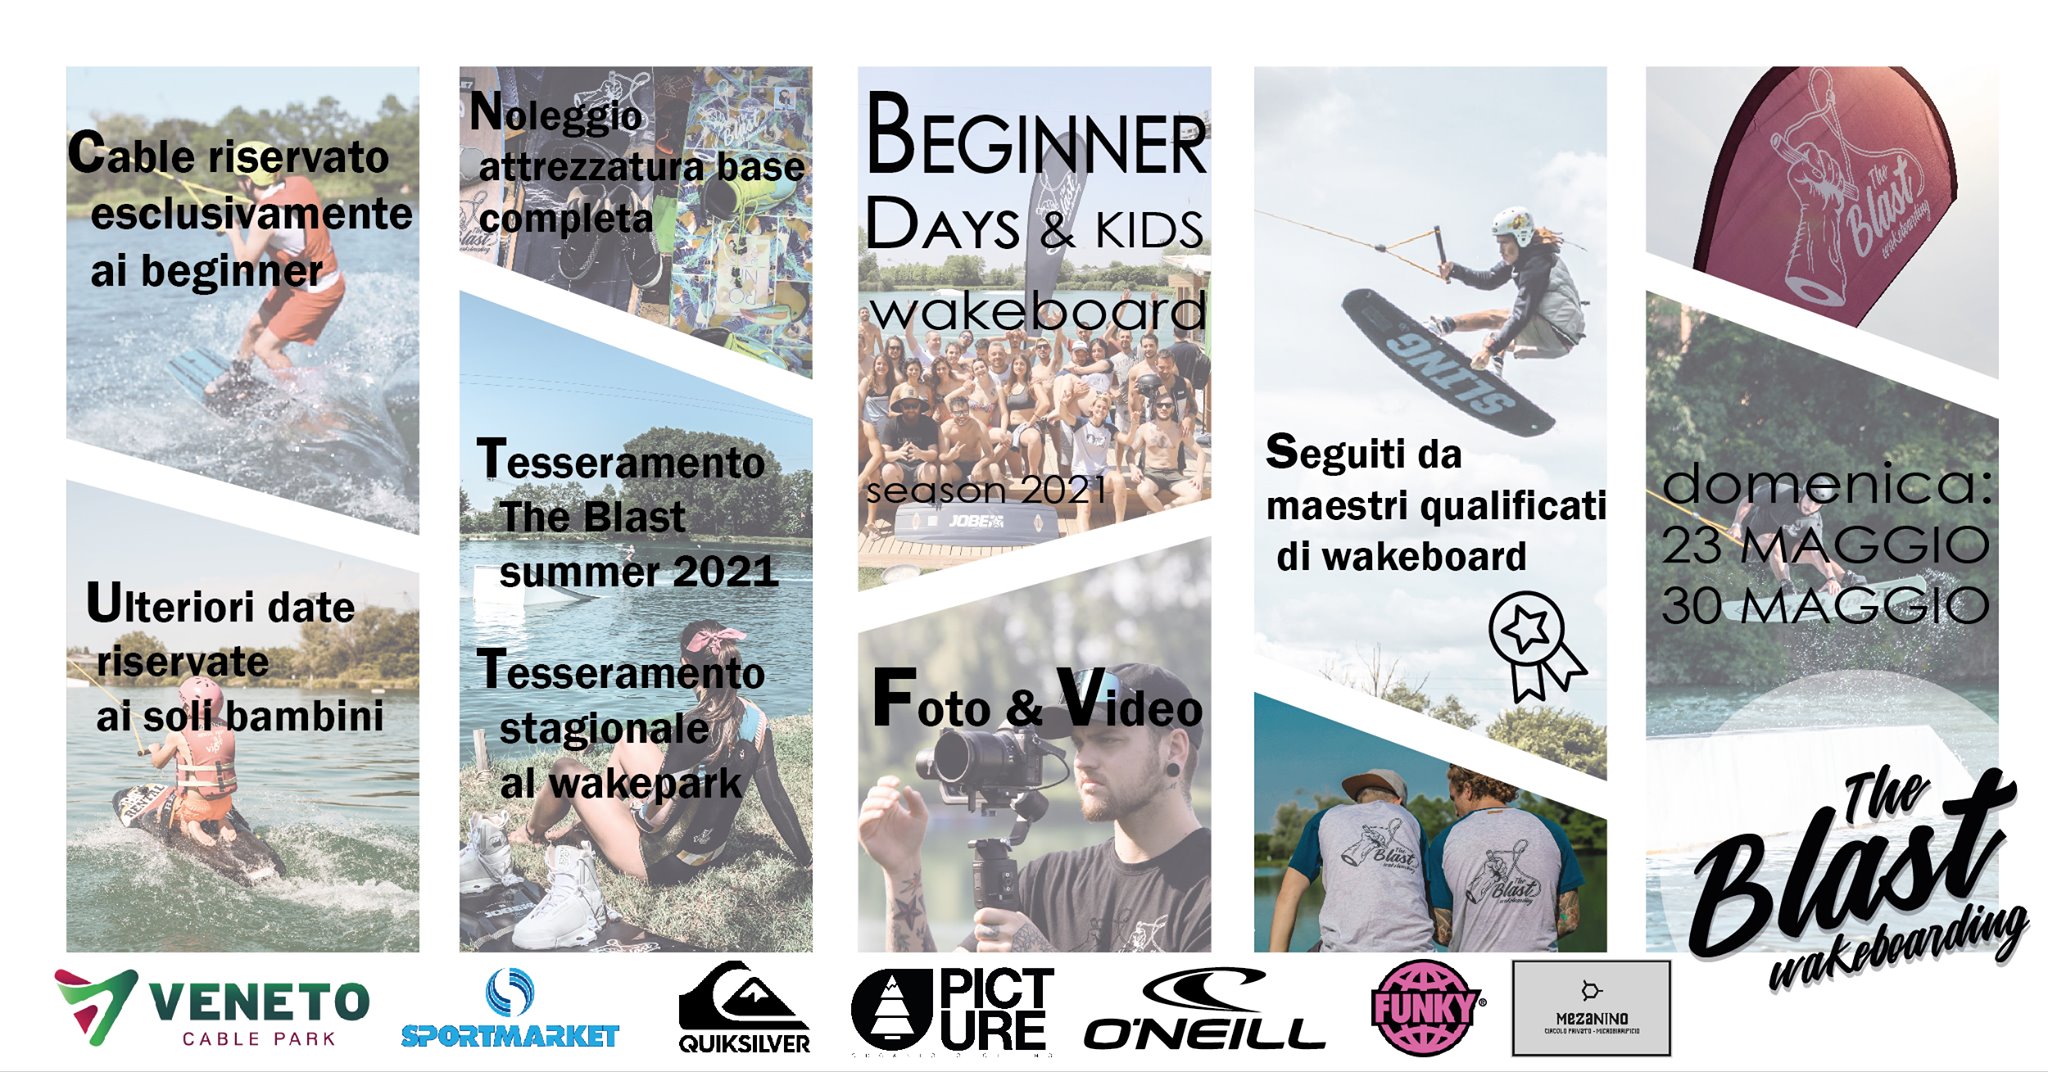 beginner days wakeboard 2021